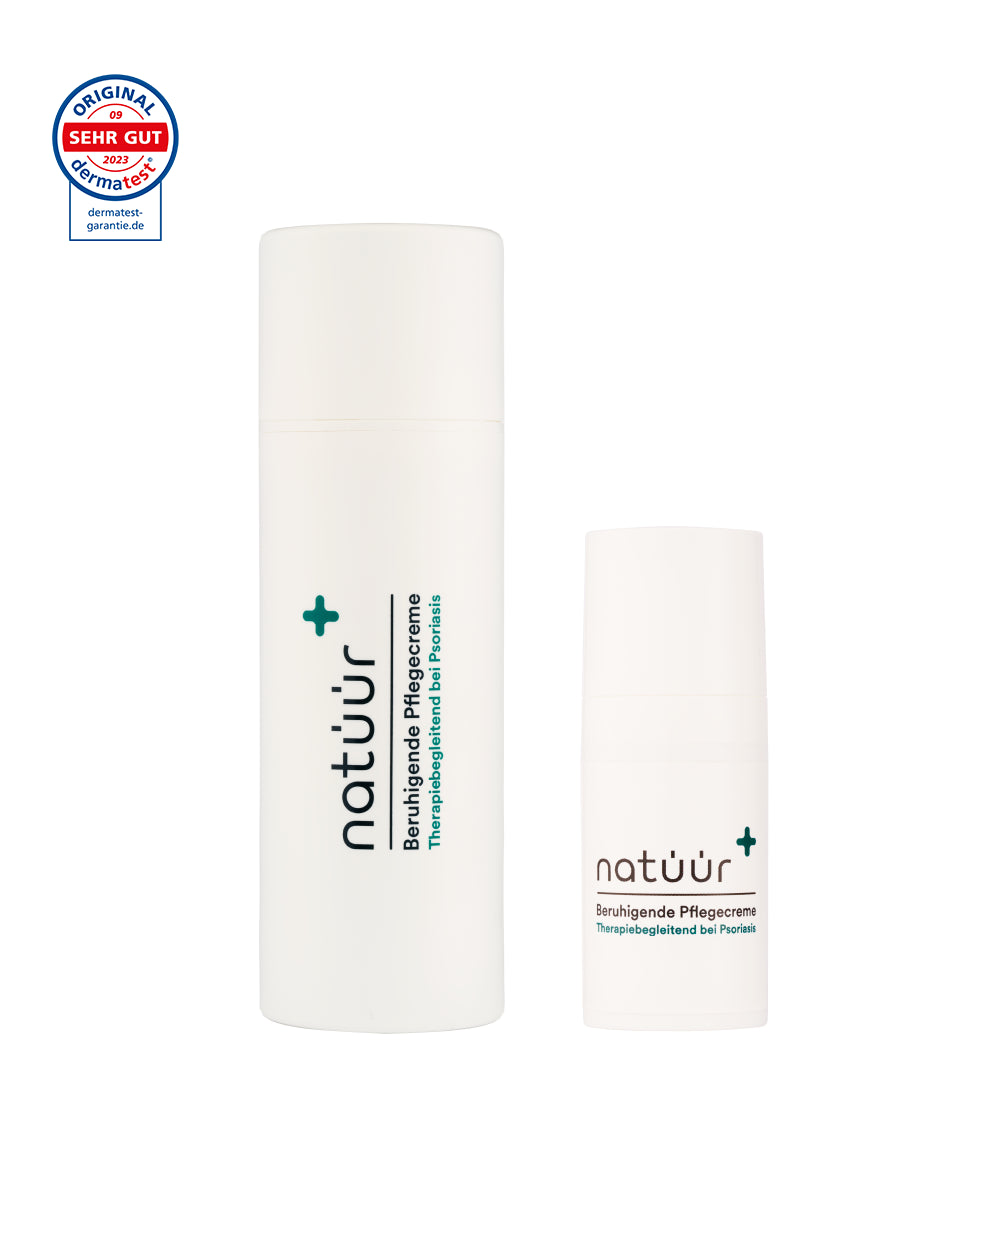 Das Duo-Set Pflegecreme der Marke natüür mit Psoriasis Hautpflege-Produkten.Die Creme ist cylinderförmig abgebildet.